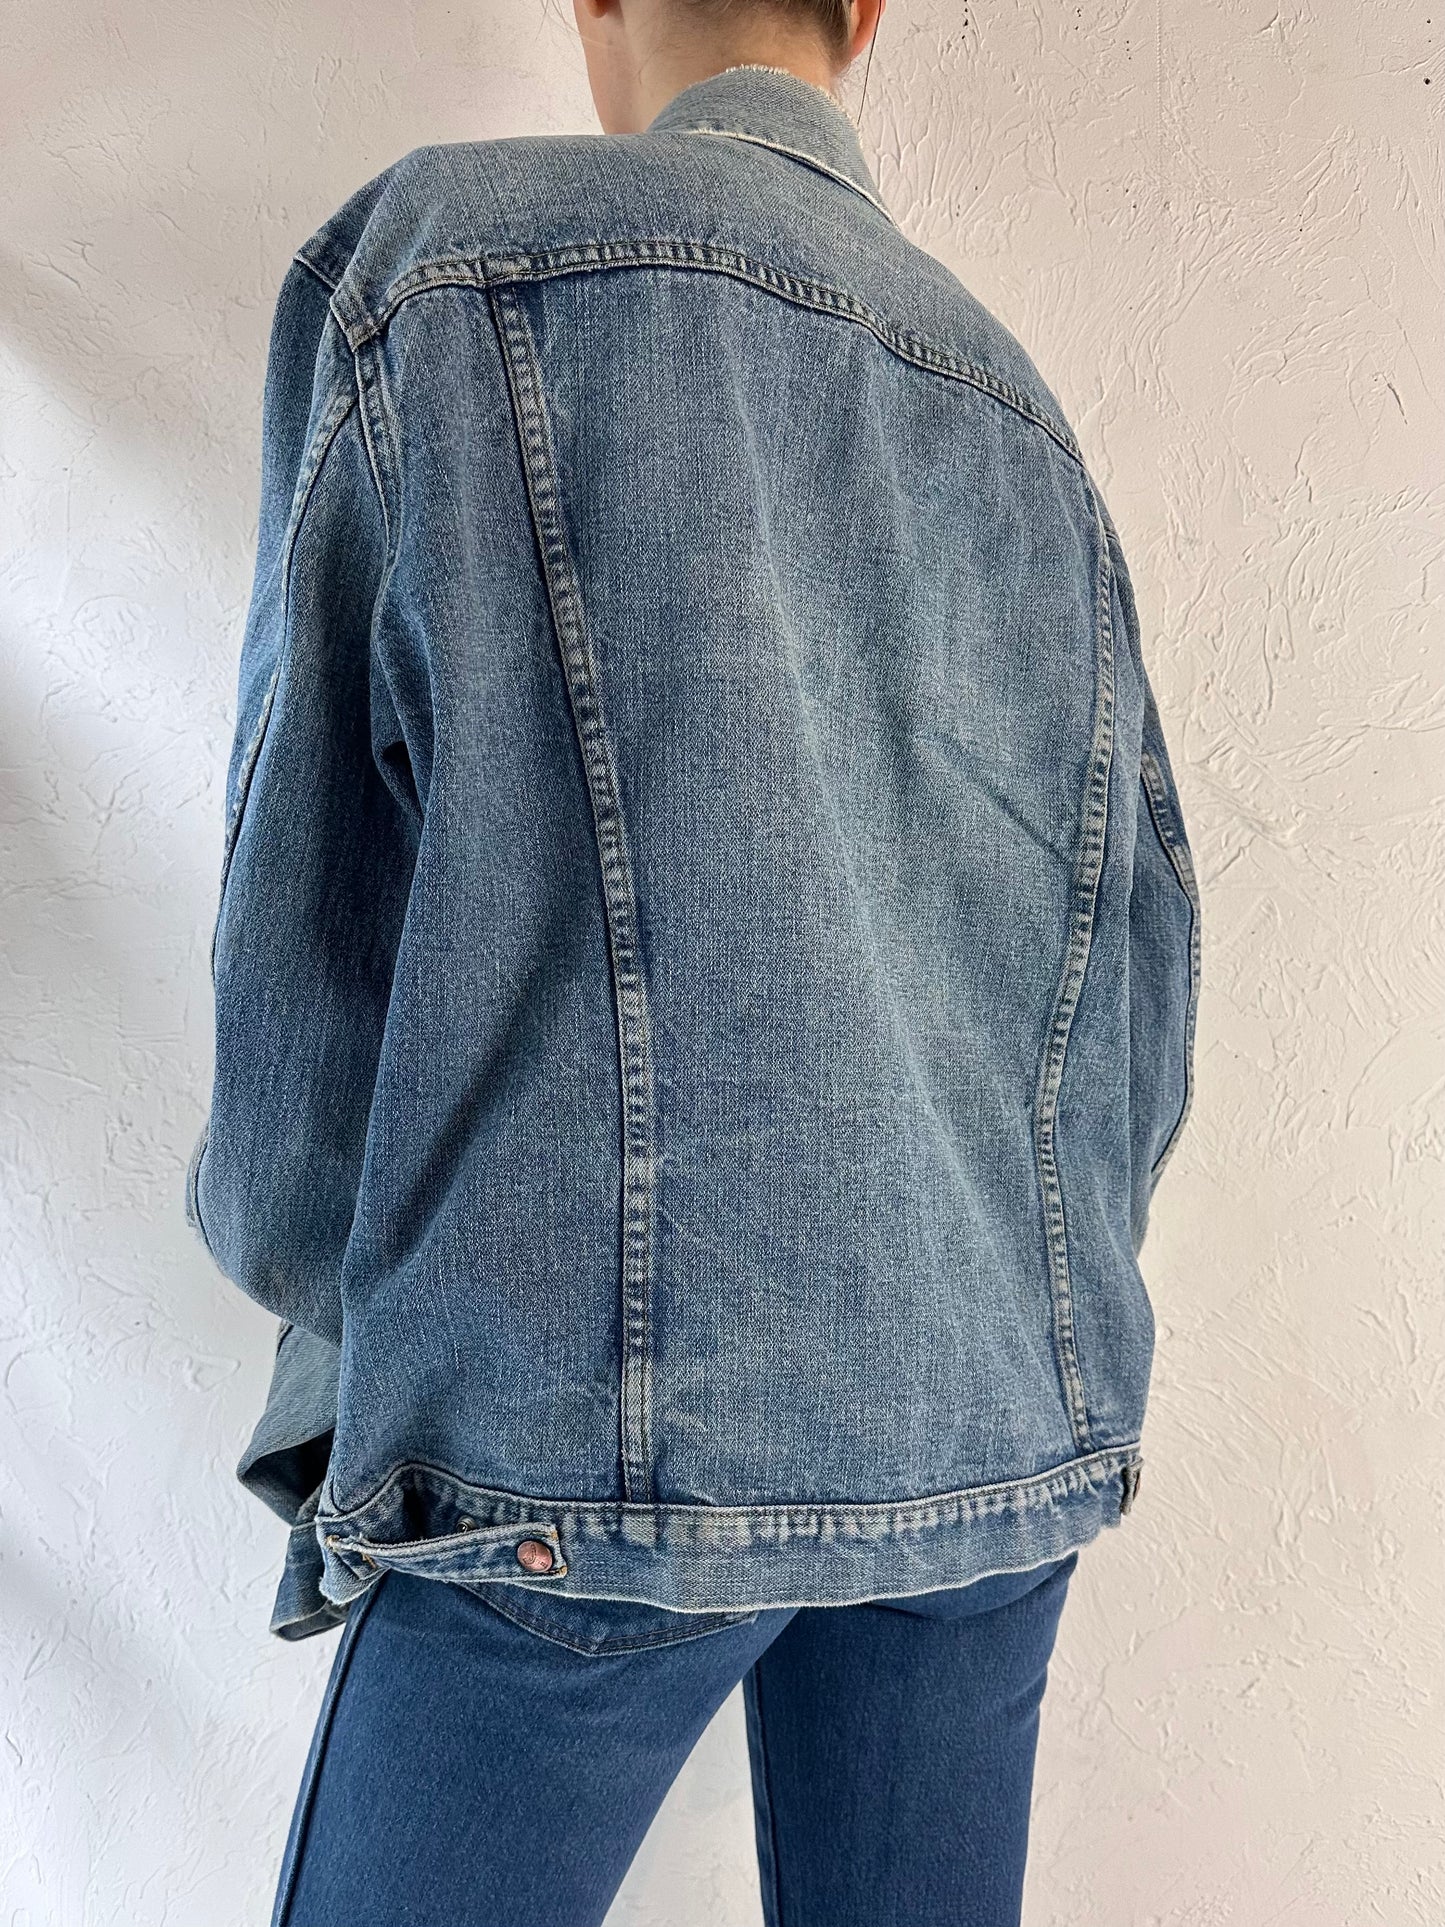 Vintage 'GWG' Thrashed Denim Jacket / Large